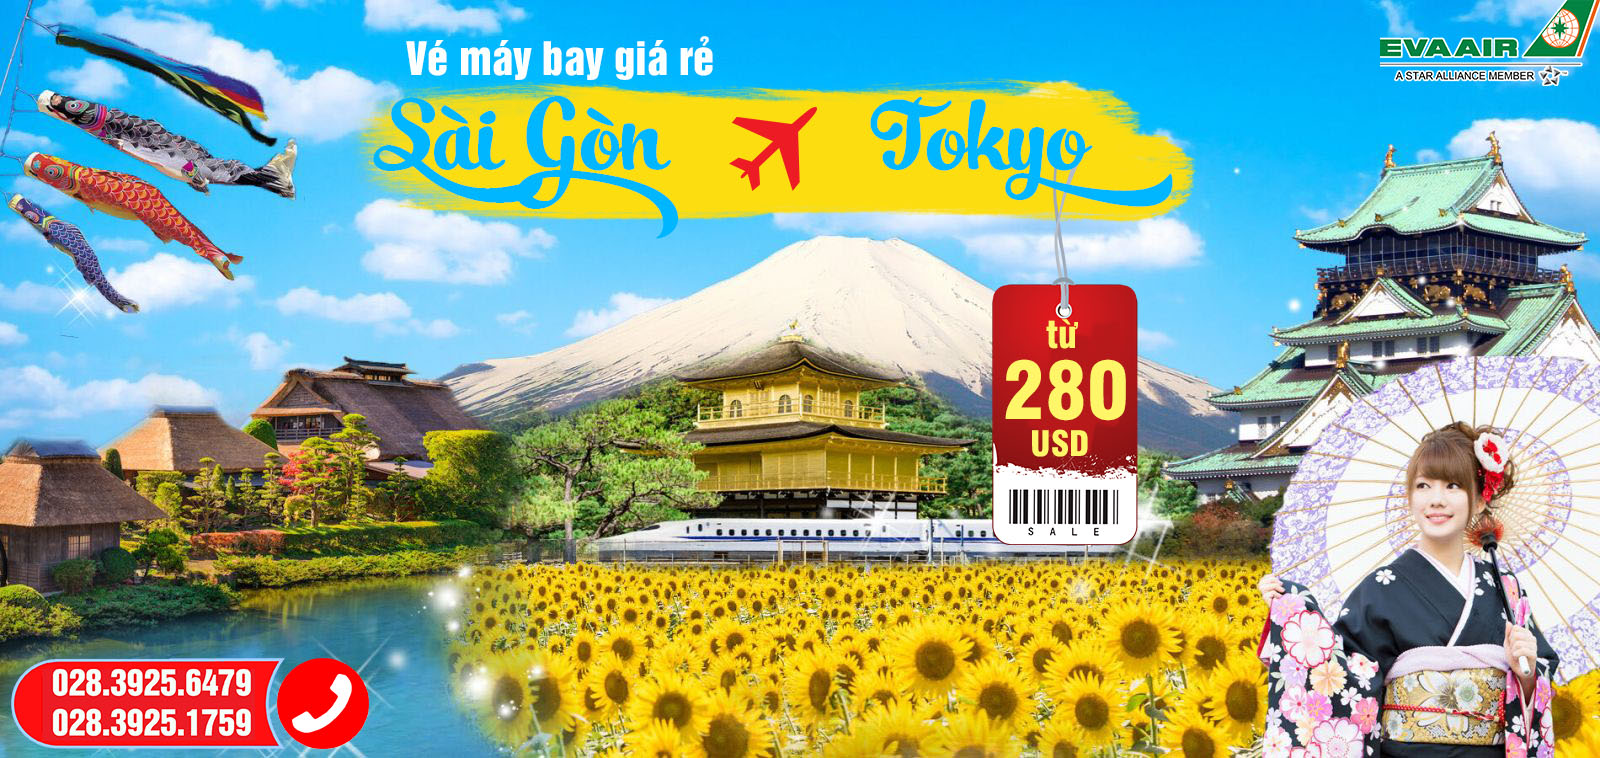 Vé máy bay từ Sài Gòn đi Tokyo giá rẻ nhất